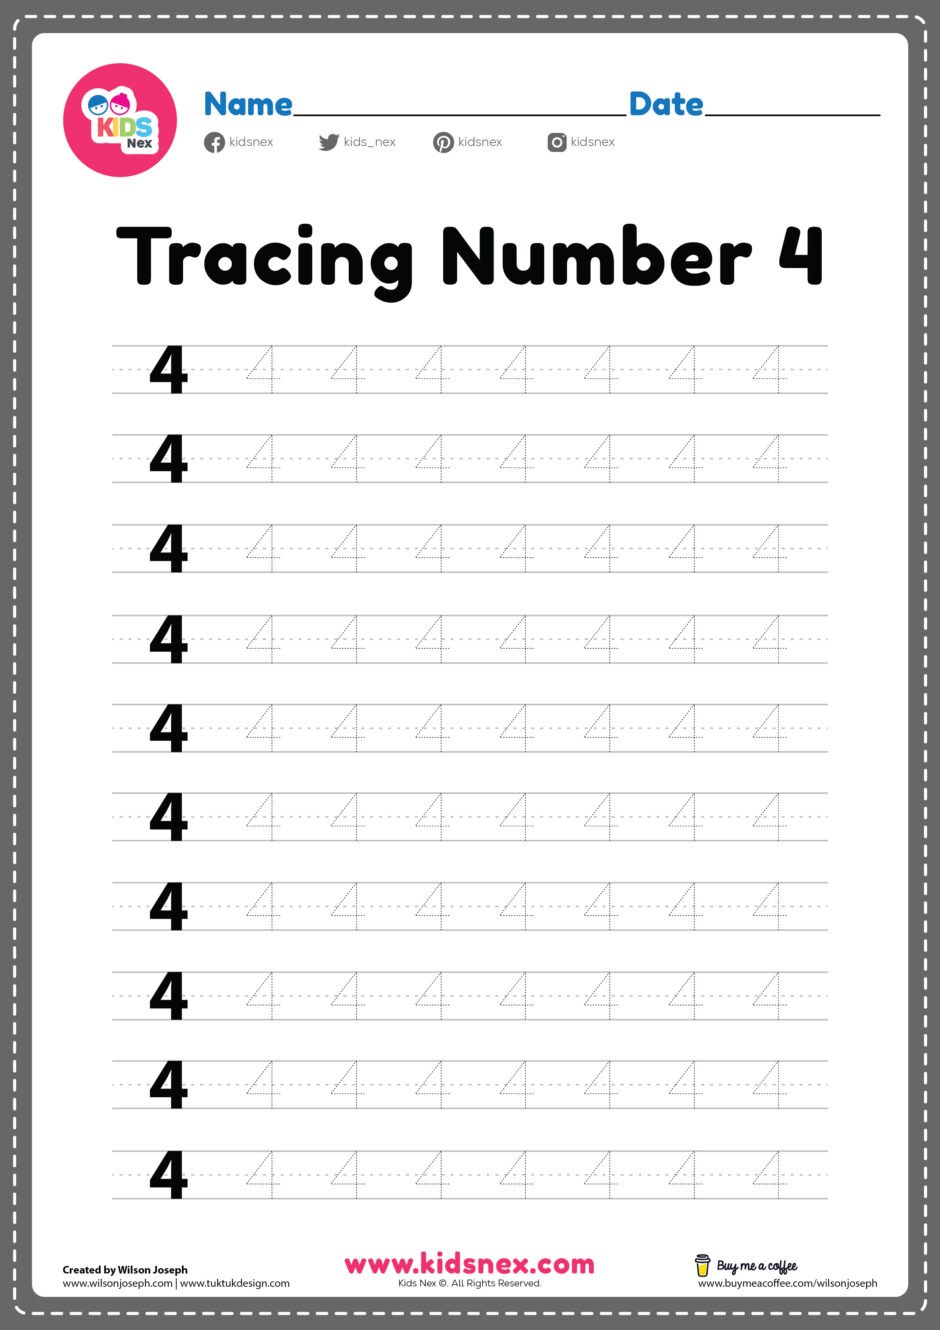 tracing-number-4-worksheet-free-printable-pdf-for-preschool